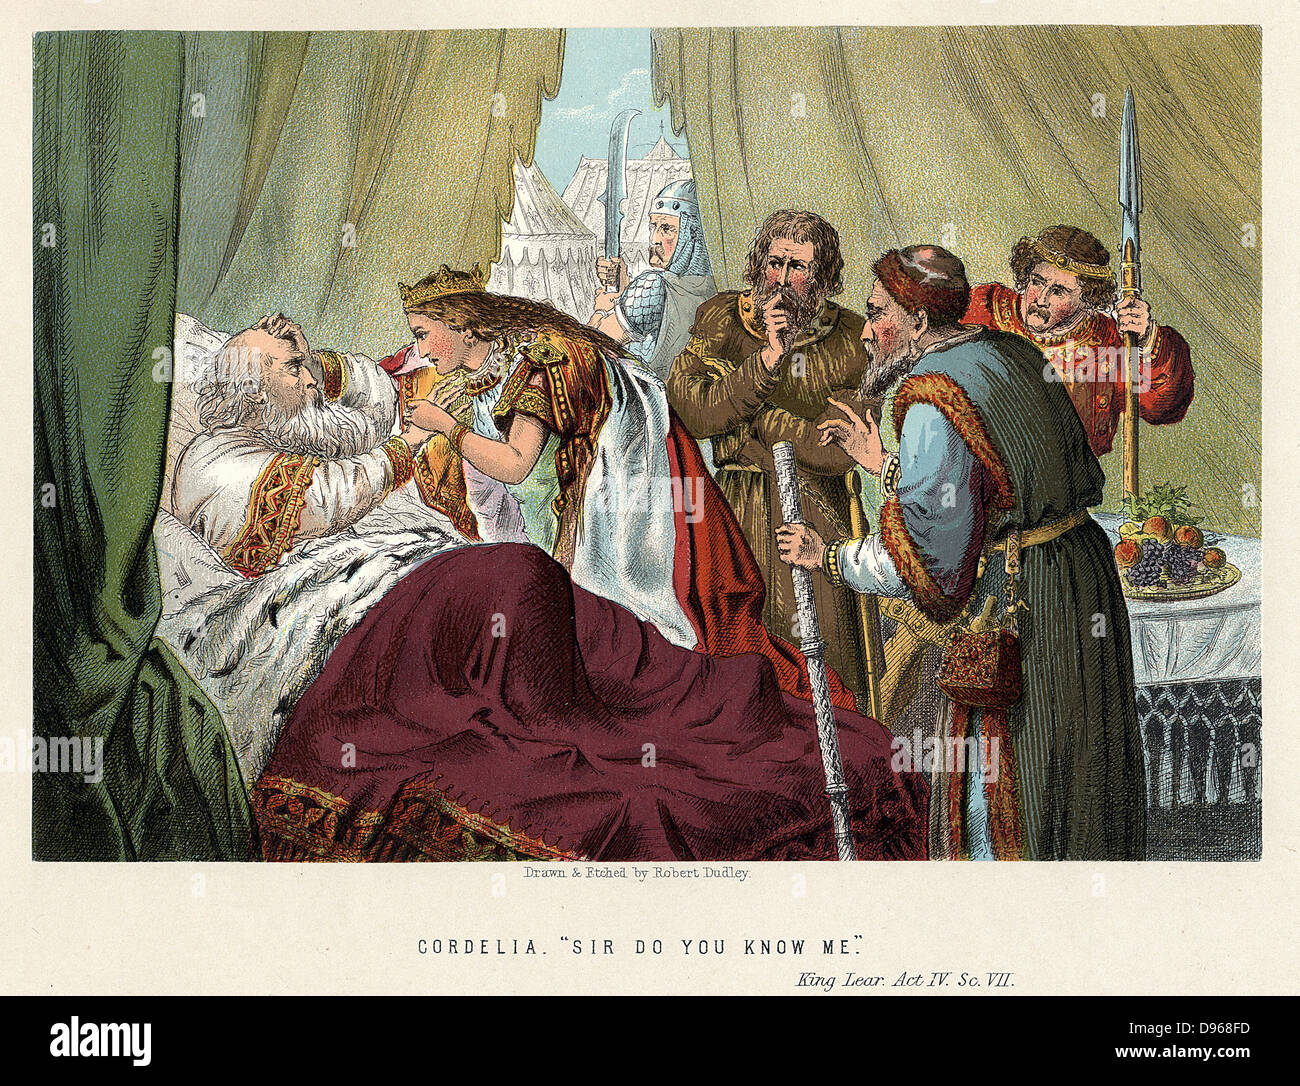 Shakespeares "König Lear" zuerst durchgeführt c 1605 Lear, verraten durch seine Töchter Goneril und Regan und von Wut, Ohnmacht, verwirrt und Misshandlungen, getröstet von seiner jüngsten Tochter Cordelia. Akt IV, Sc. VII. Chromolithograph c 1858. Stockfoto